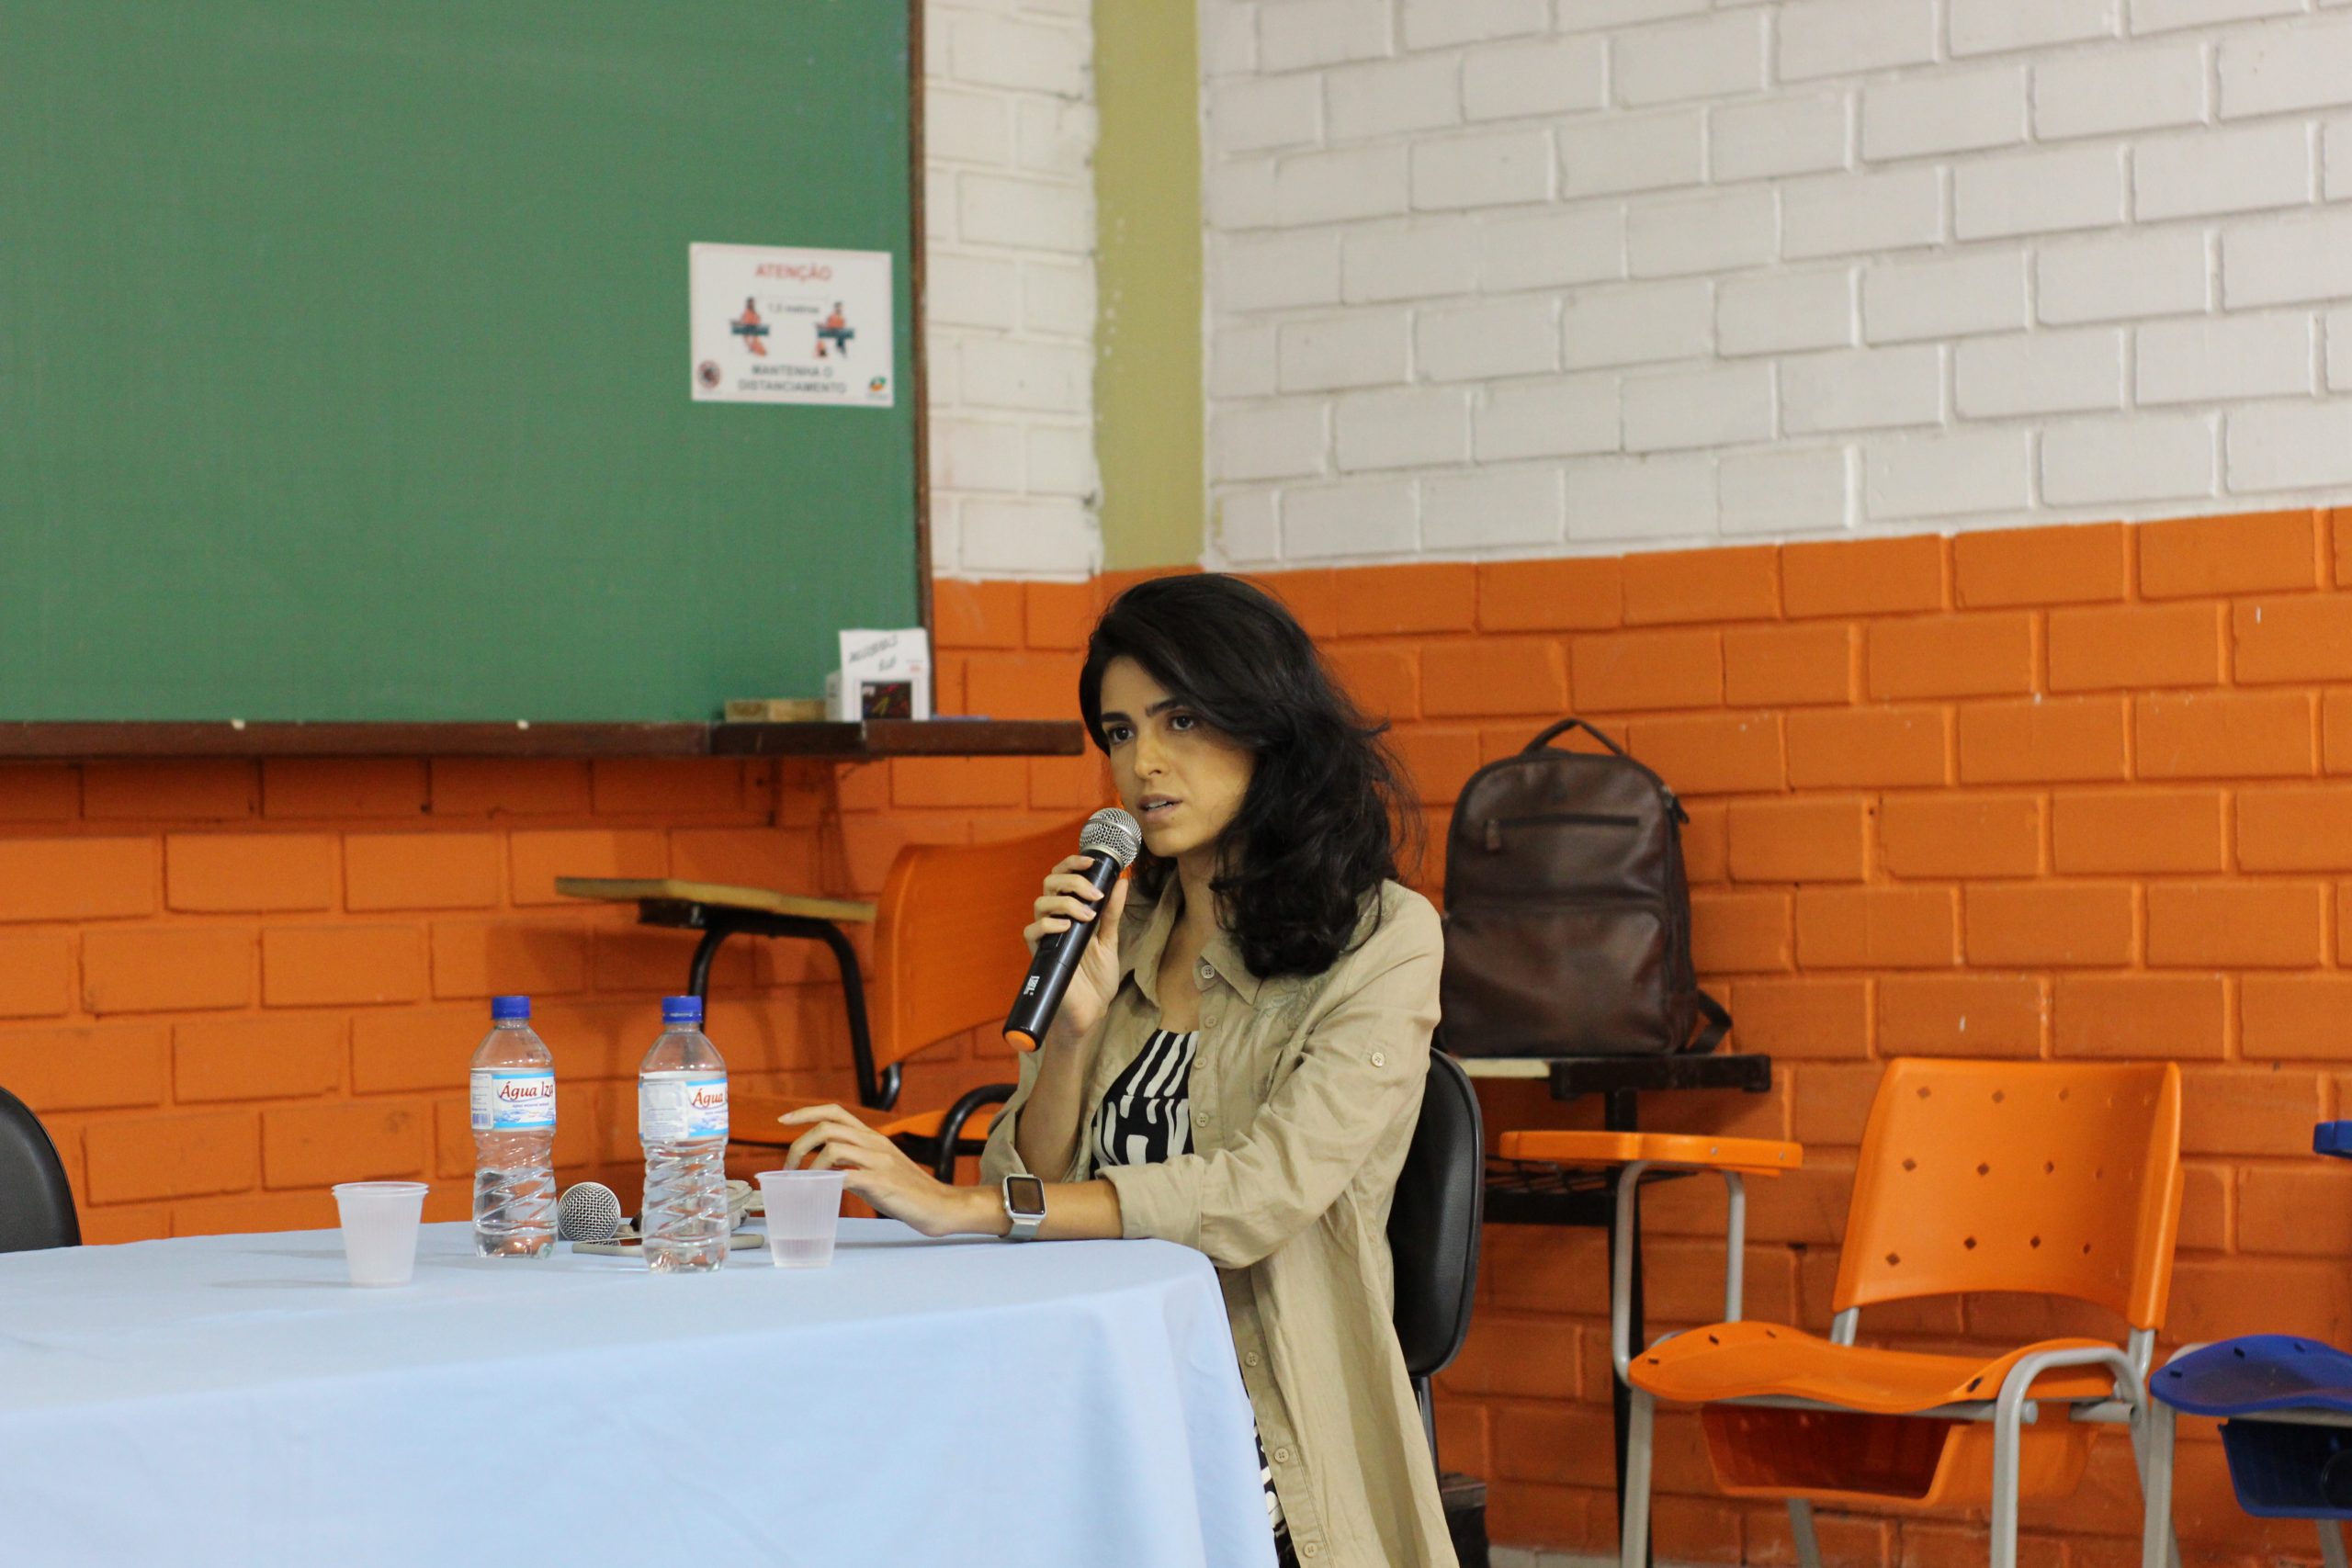 Jordana Oliveira ressaltou a importância do trabalho pedagógico para conscientizar sobre a pauta e o papel do Instituto EcomAmor | Foto: Geisa Peixoto/Uniaraguaia